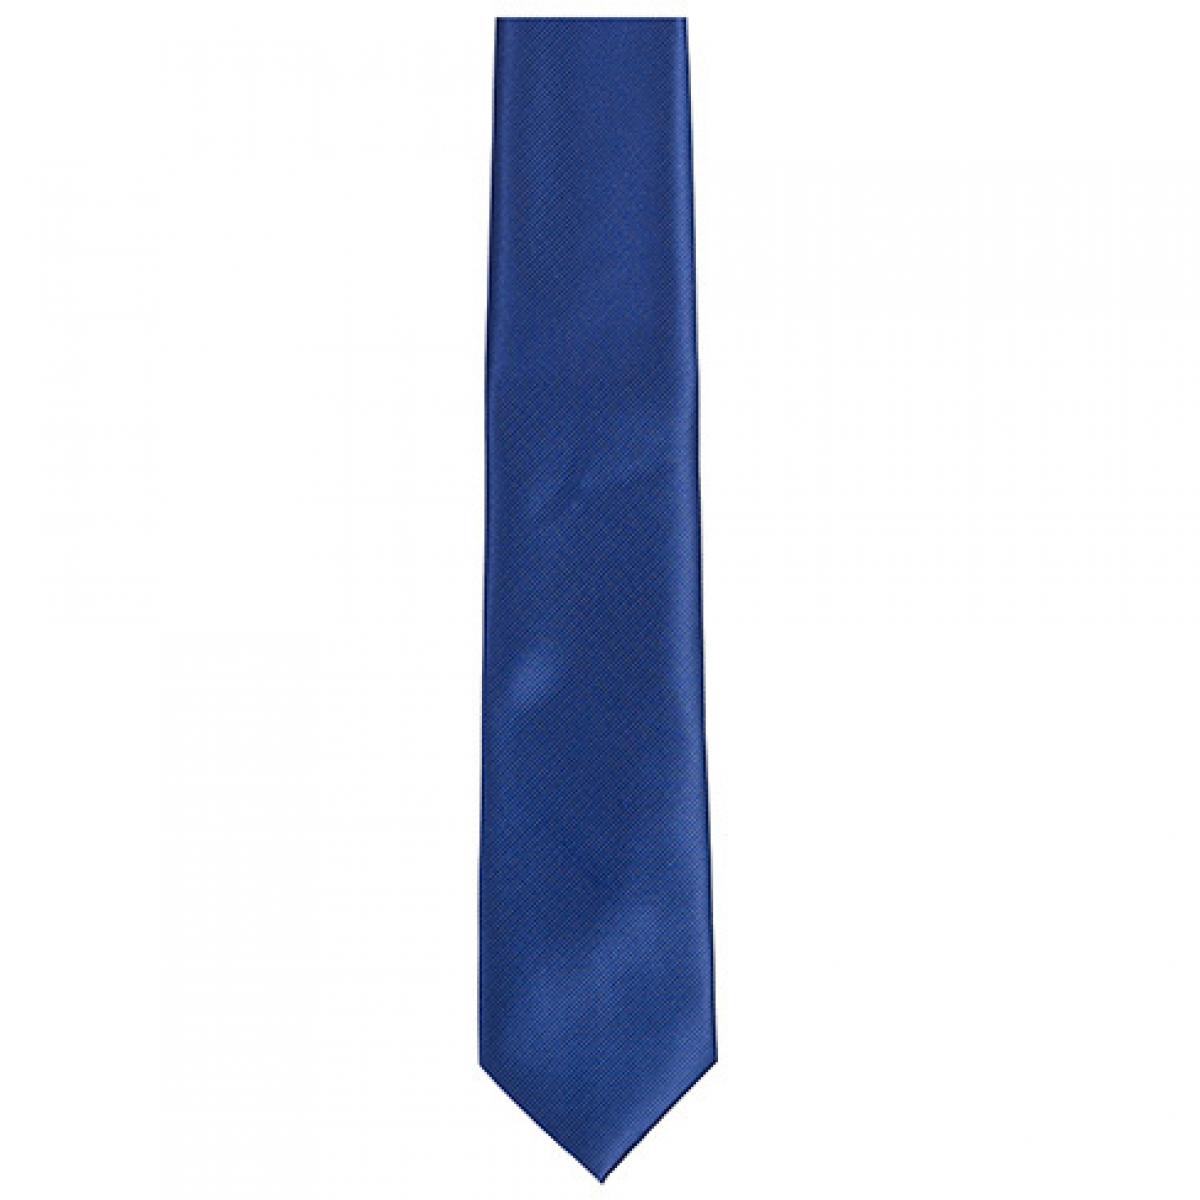 Hersteller: TYTO Herstellernummer: TT902 Artikelbezeichnung: Twill Tie / 144 x 8,5cm Farbe: Navy